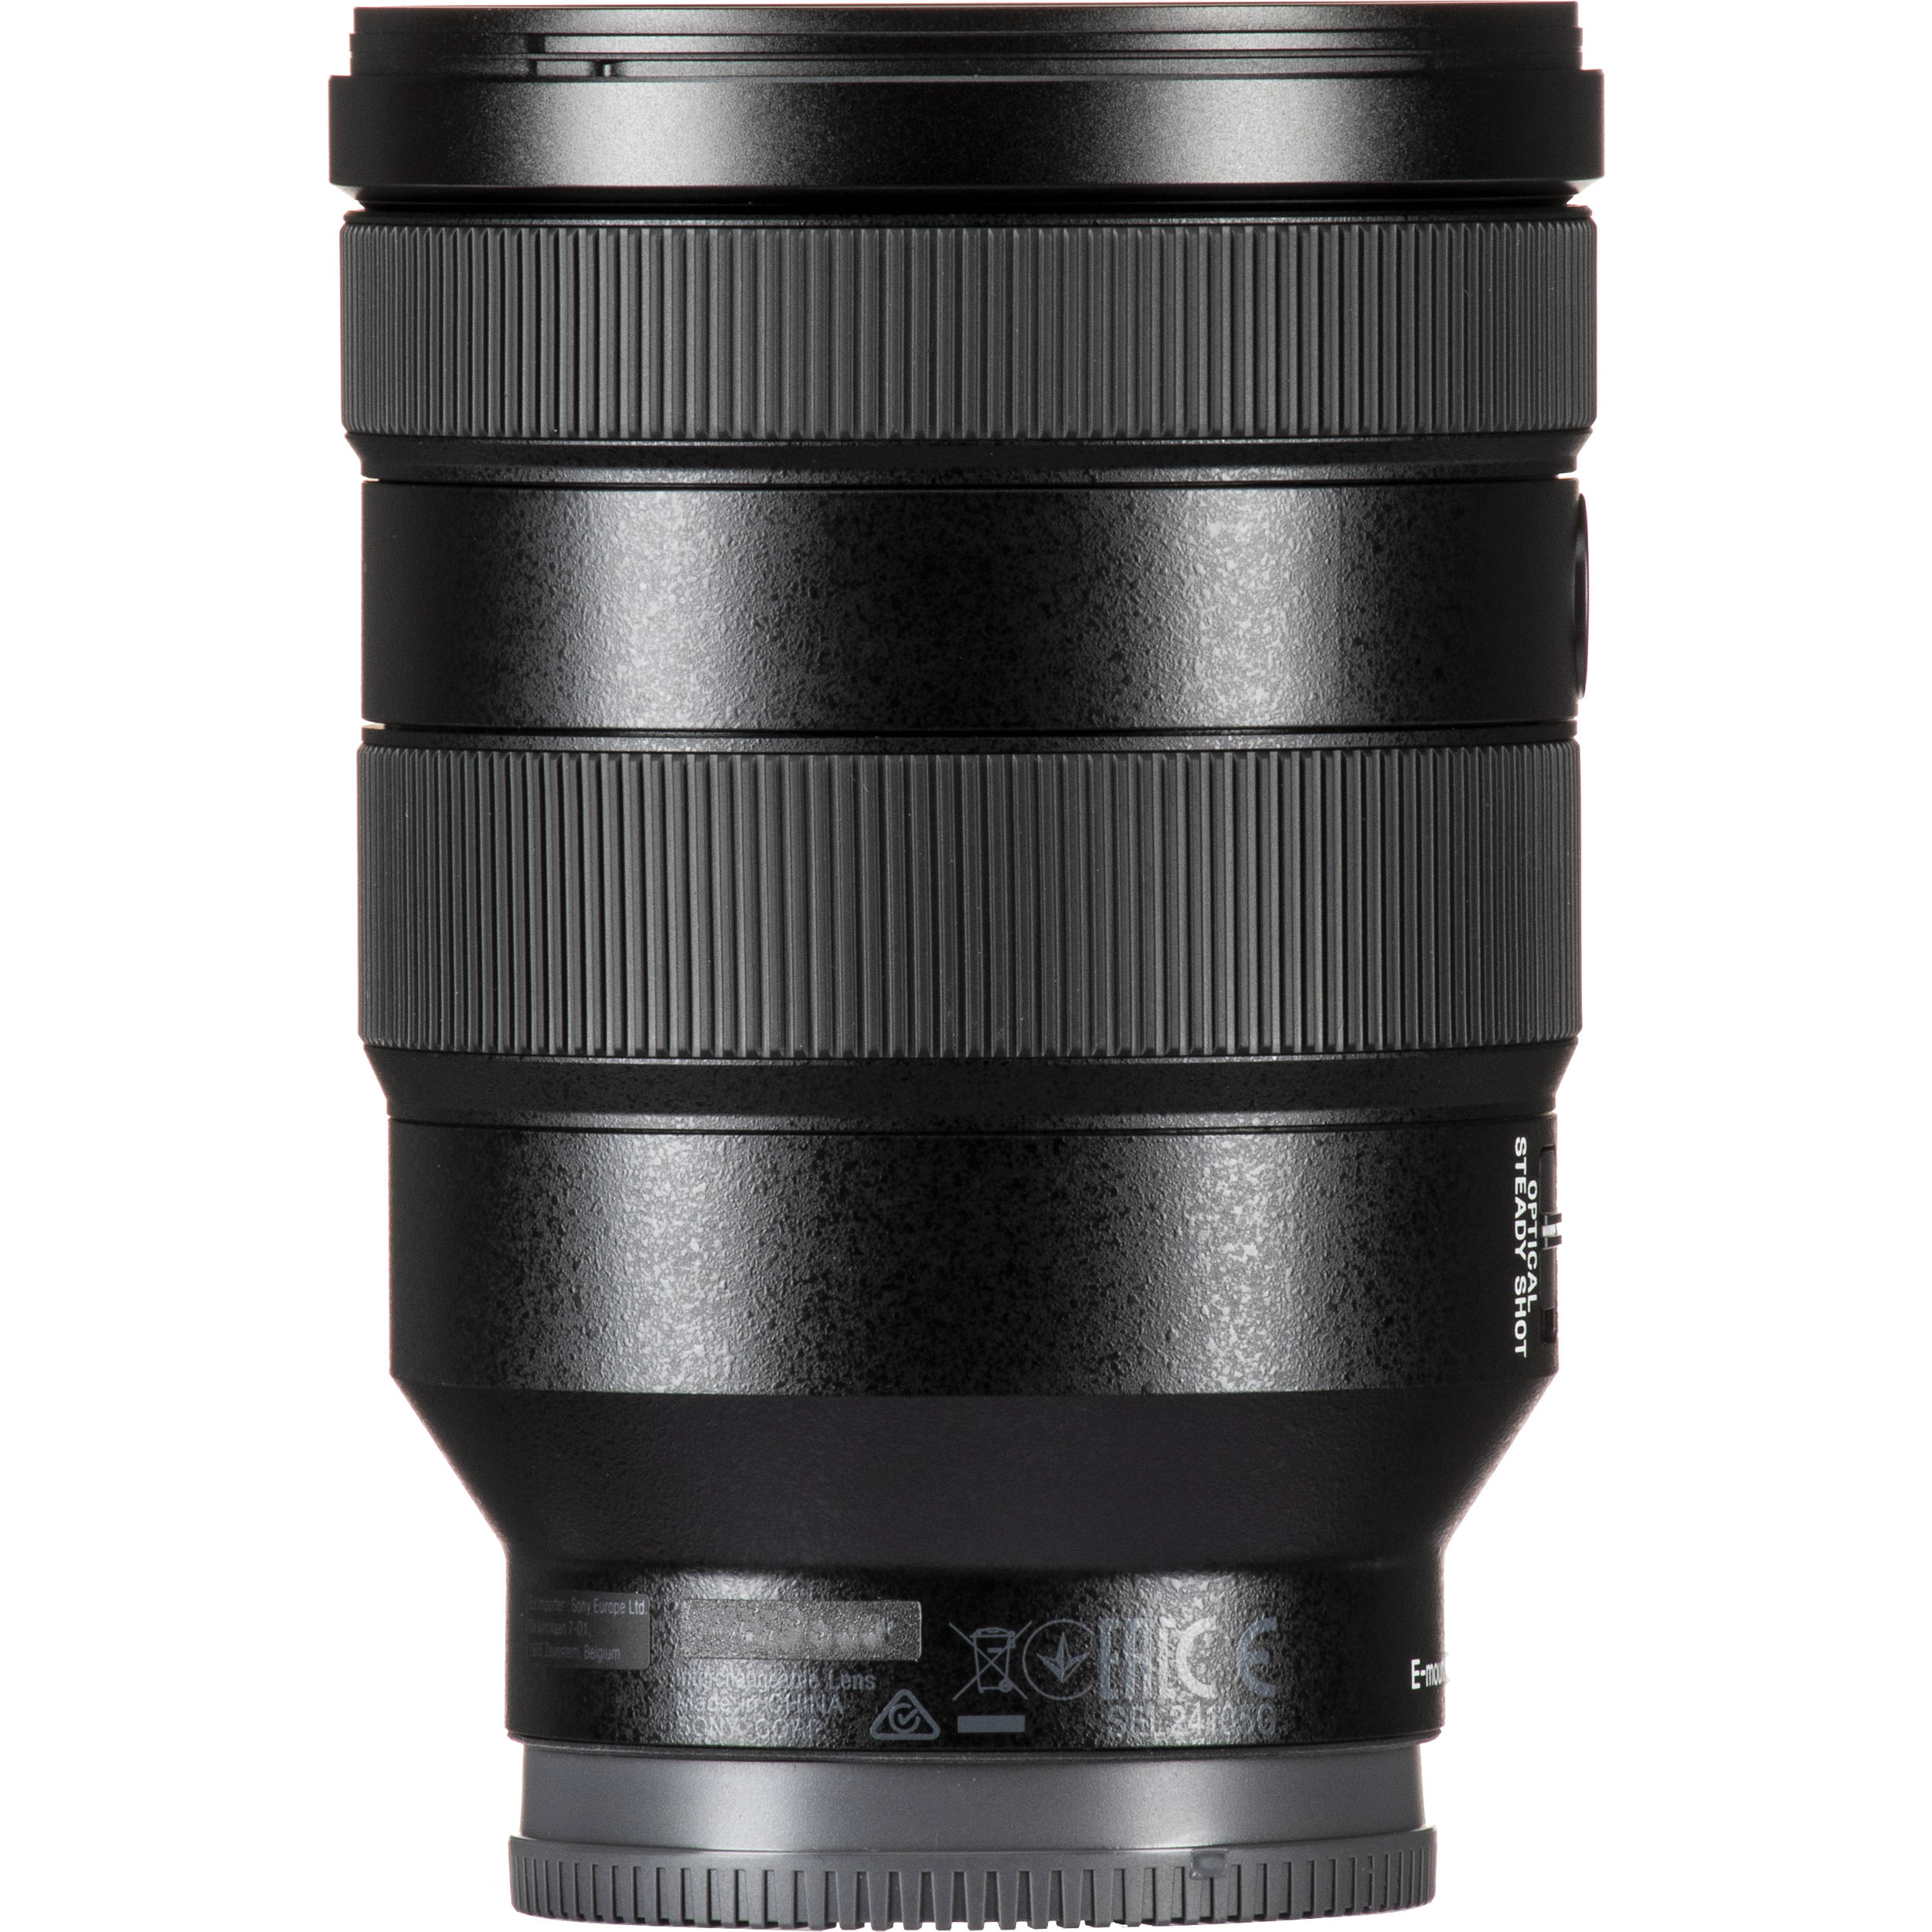 Sony Fe 24 105mm F 4 G Oss Lens Selg 2 B H Photo Video